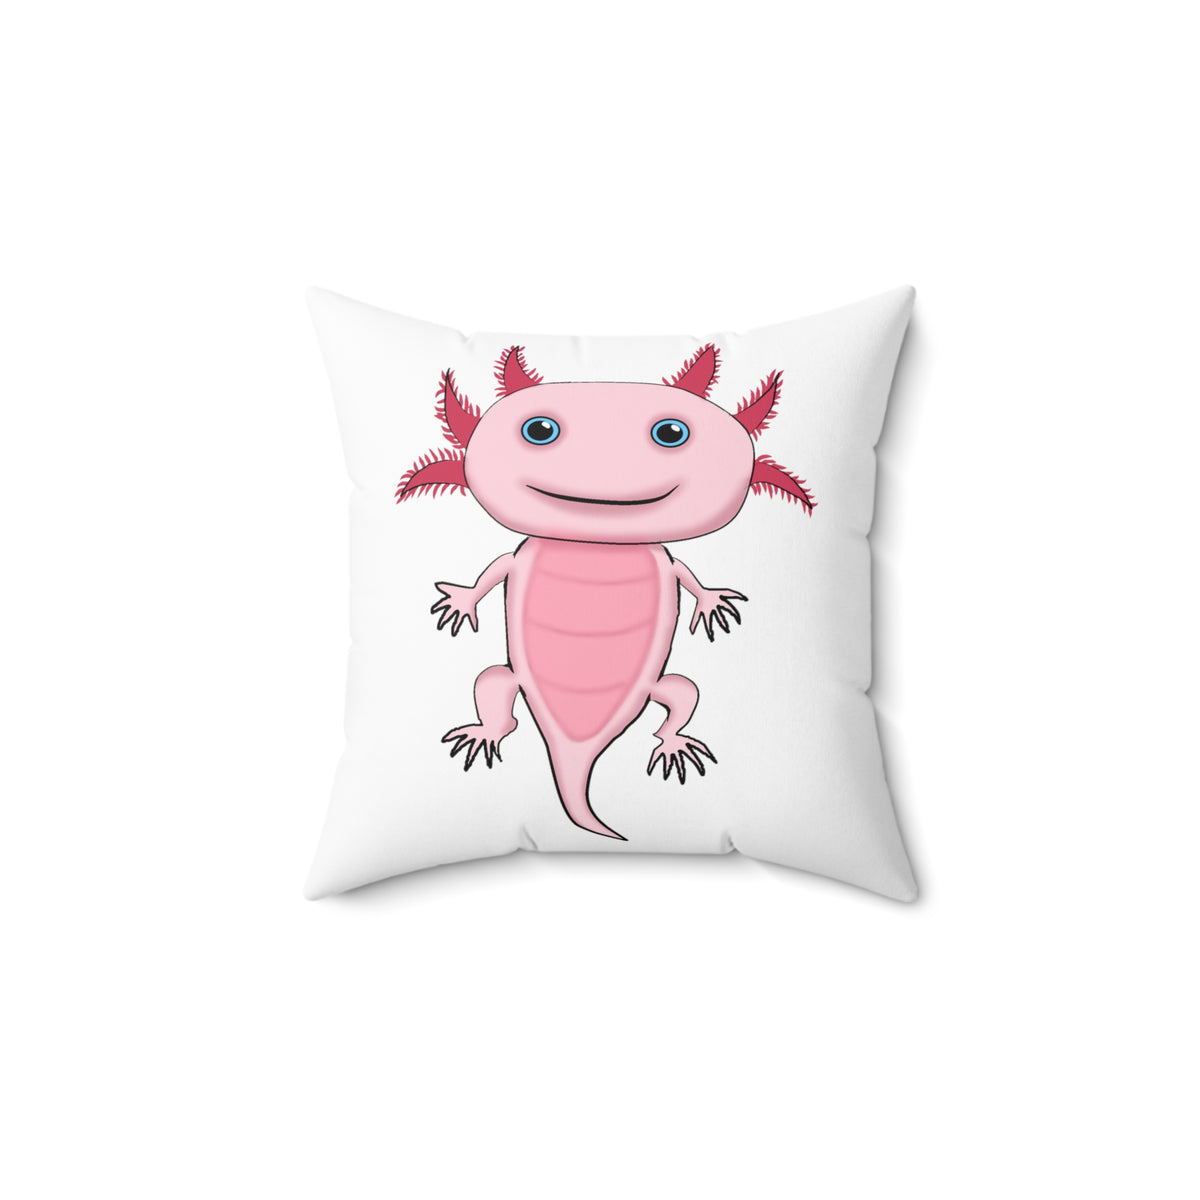 Adorable Pink Axolotl Spun Polyester Square Pillow - Kawaii Esquire